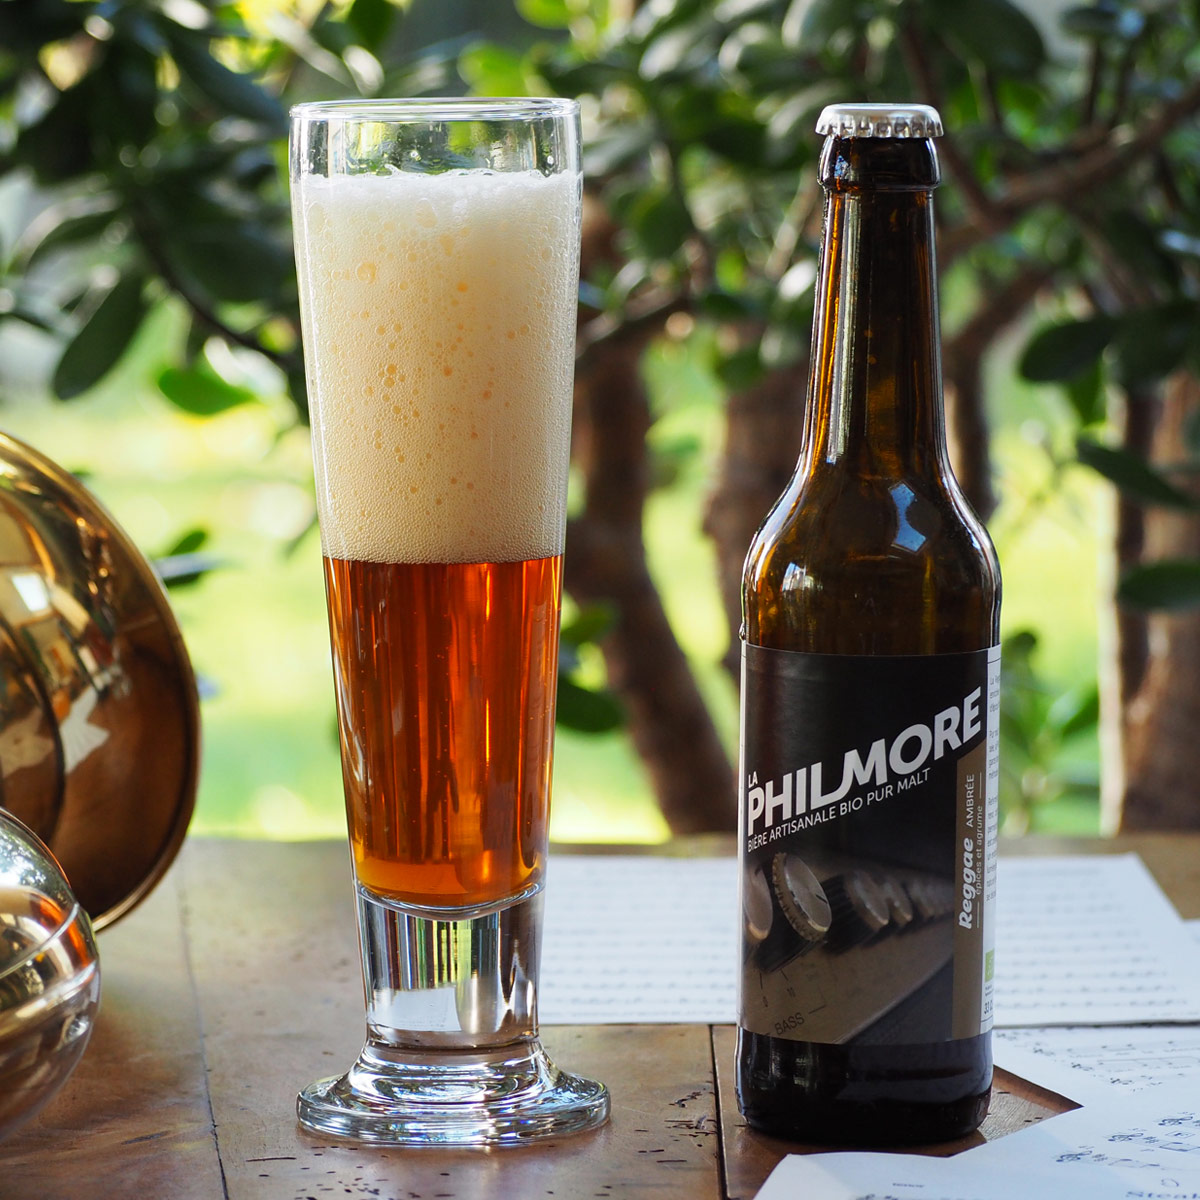 La Philmore Reggae – bière artisanale bio pur malt